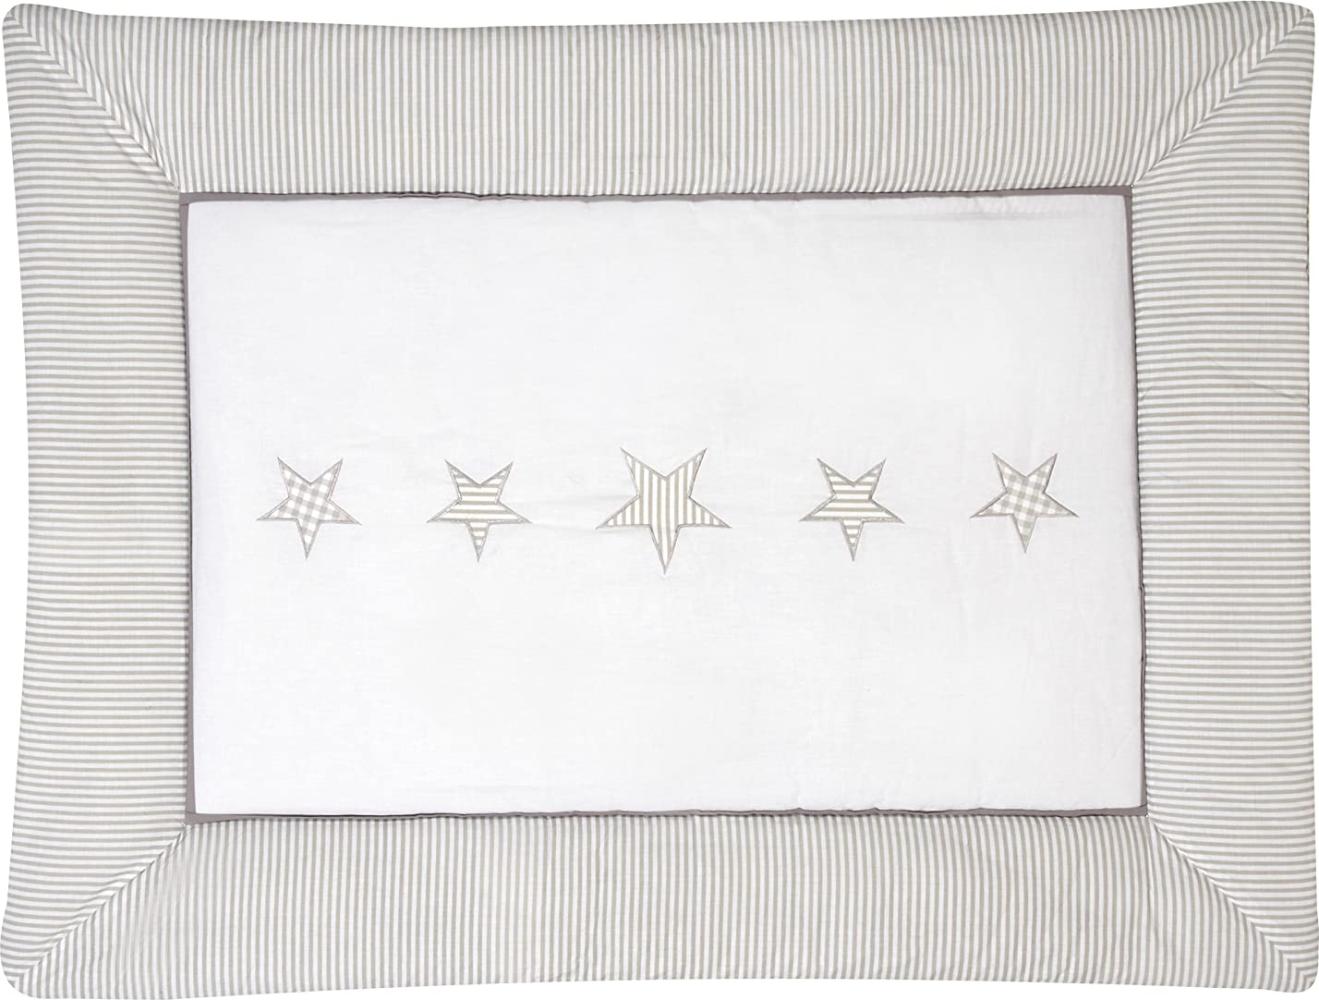 Schardt 'Stern' Krabbeldecke mit Applikation weiß/beige, 100x135 cm Bild 1